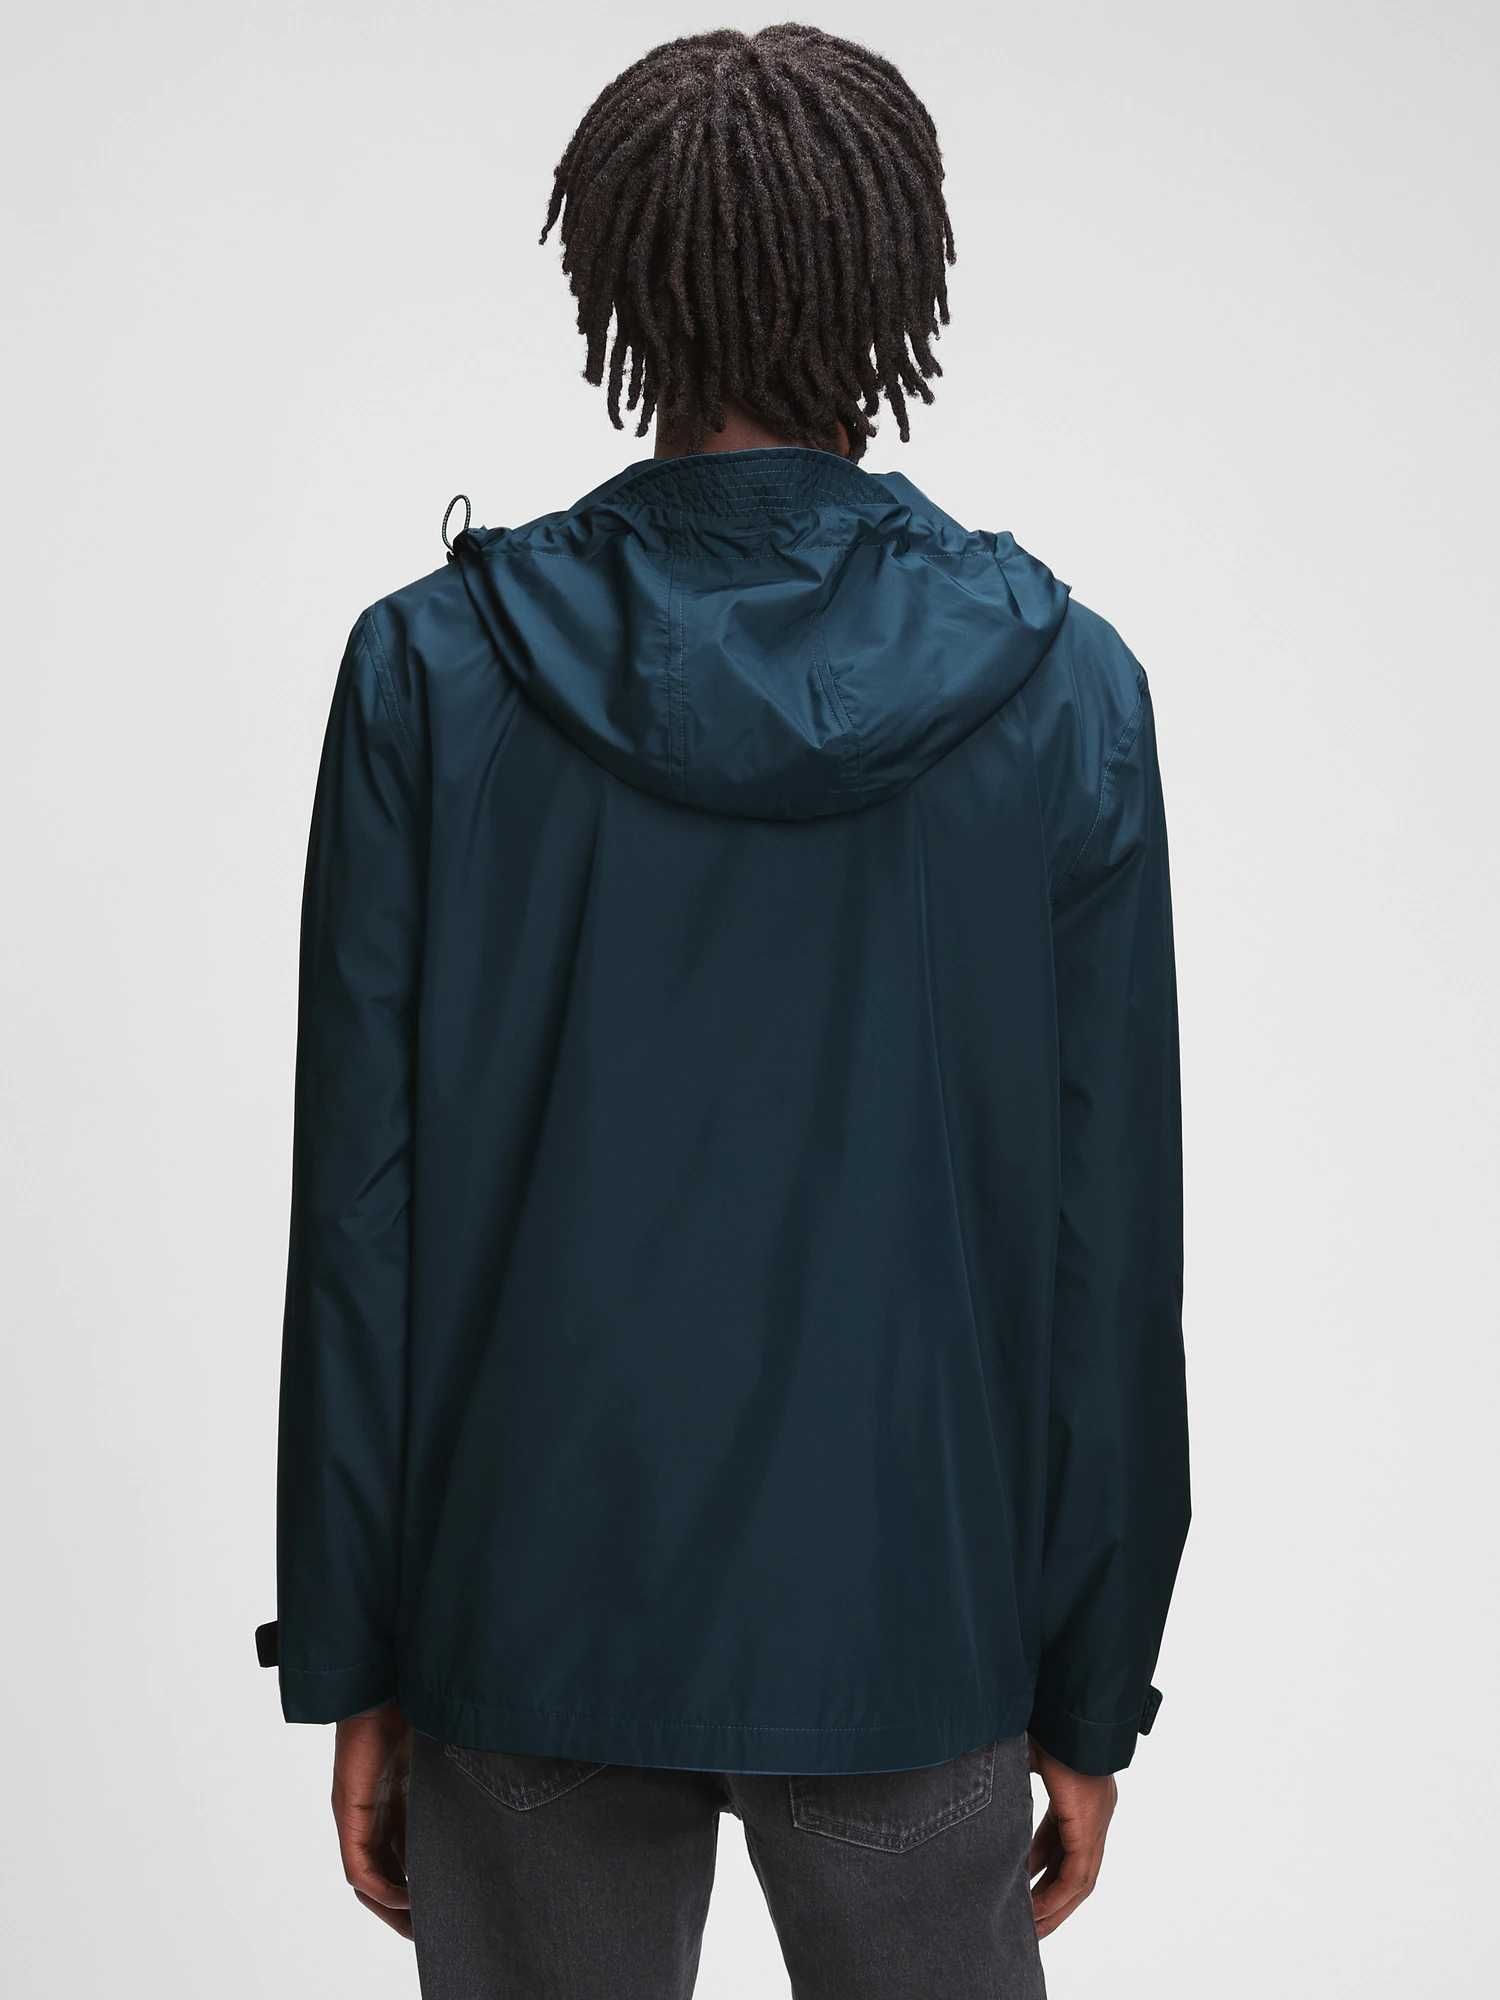 Новая ветровка куртка gap (гэп rain jacket ) с америки l,xl